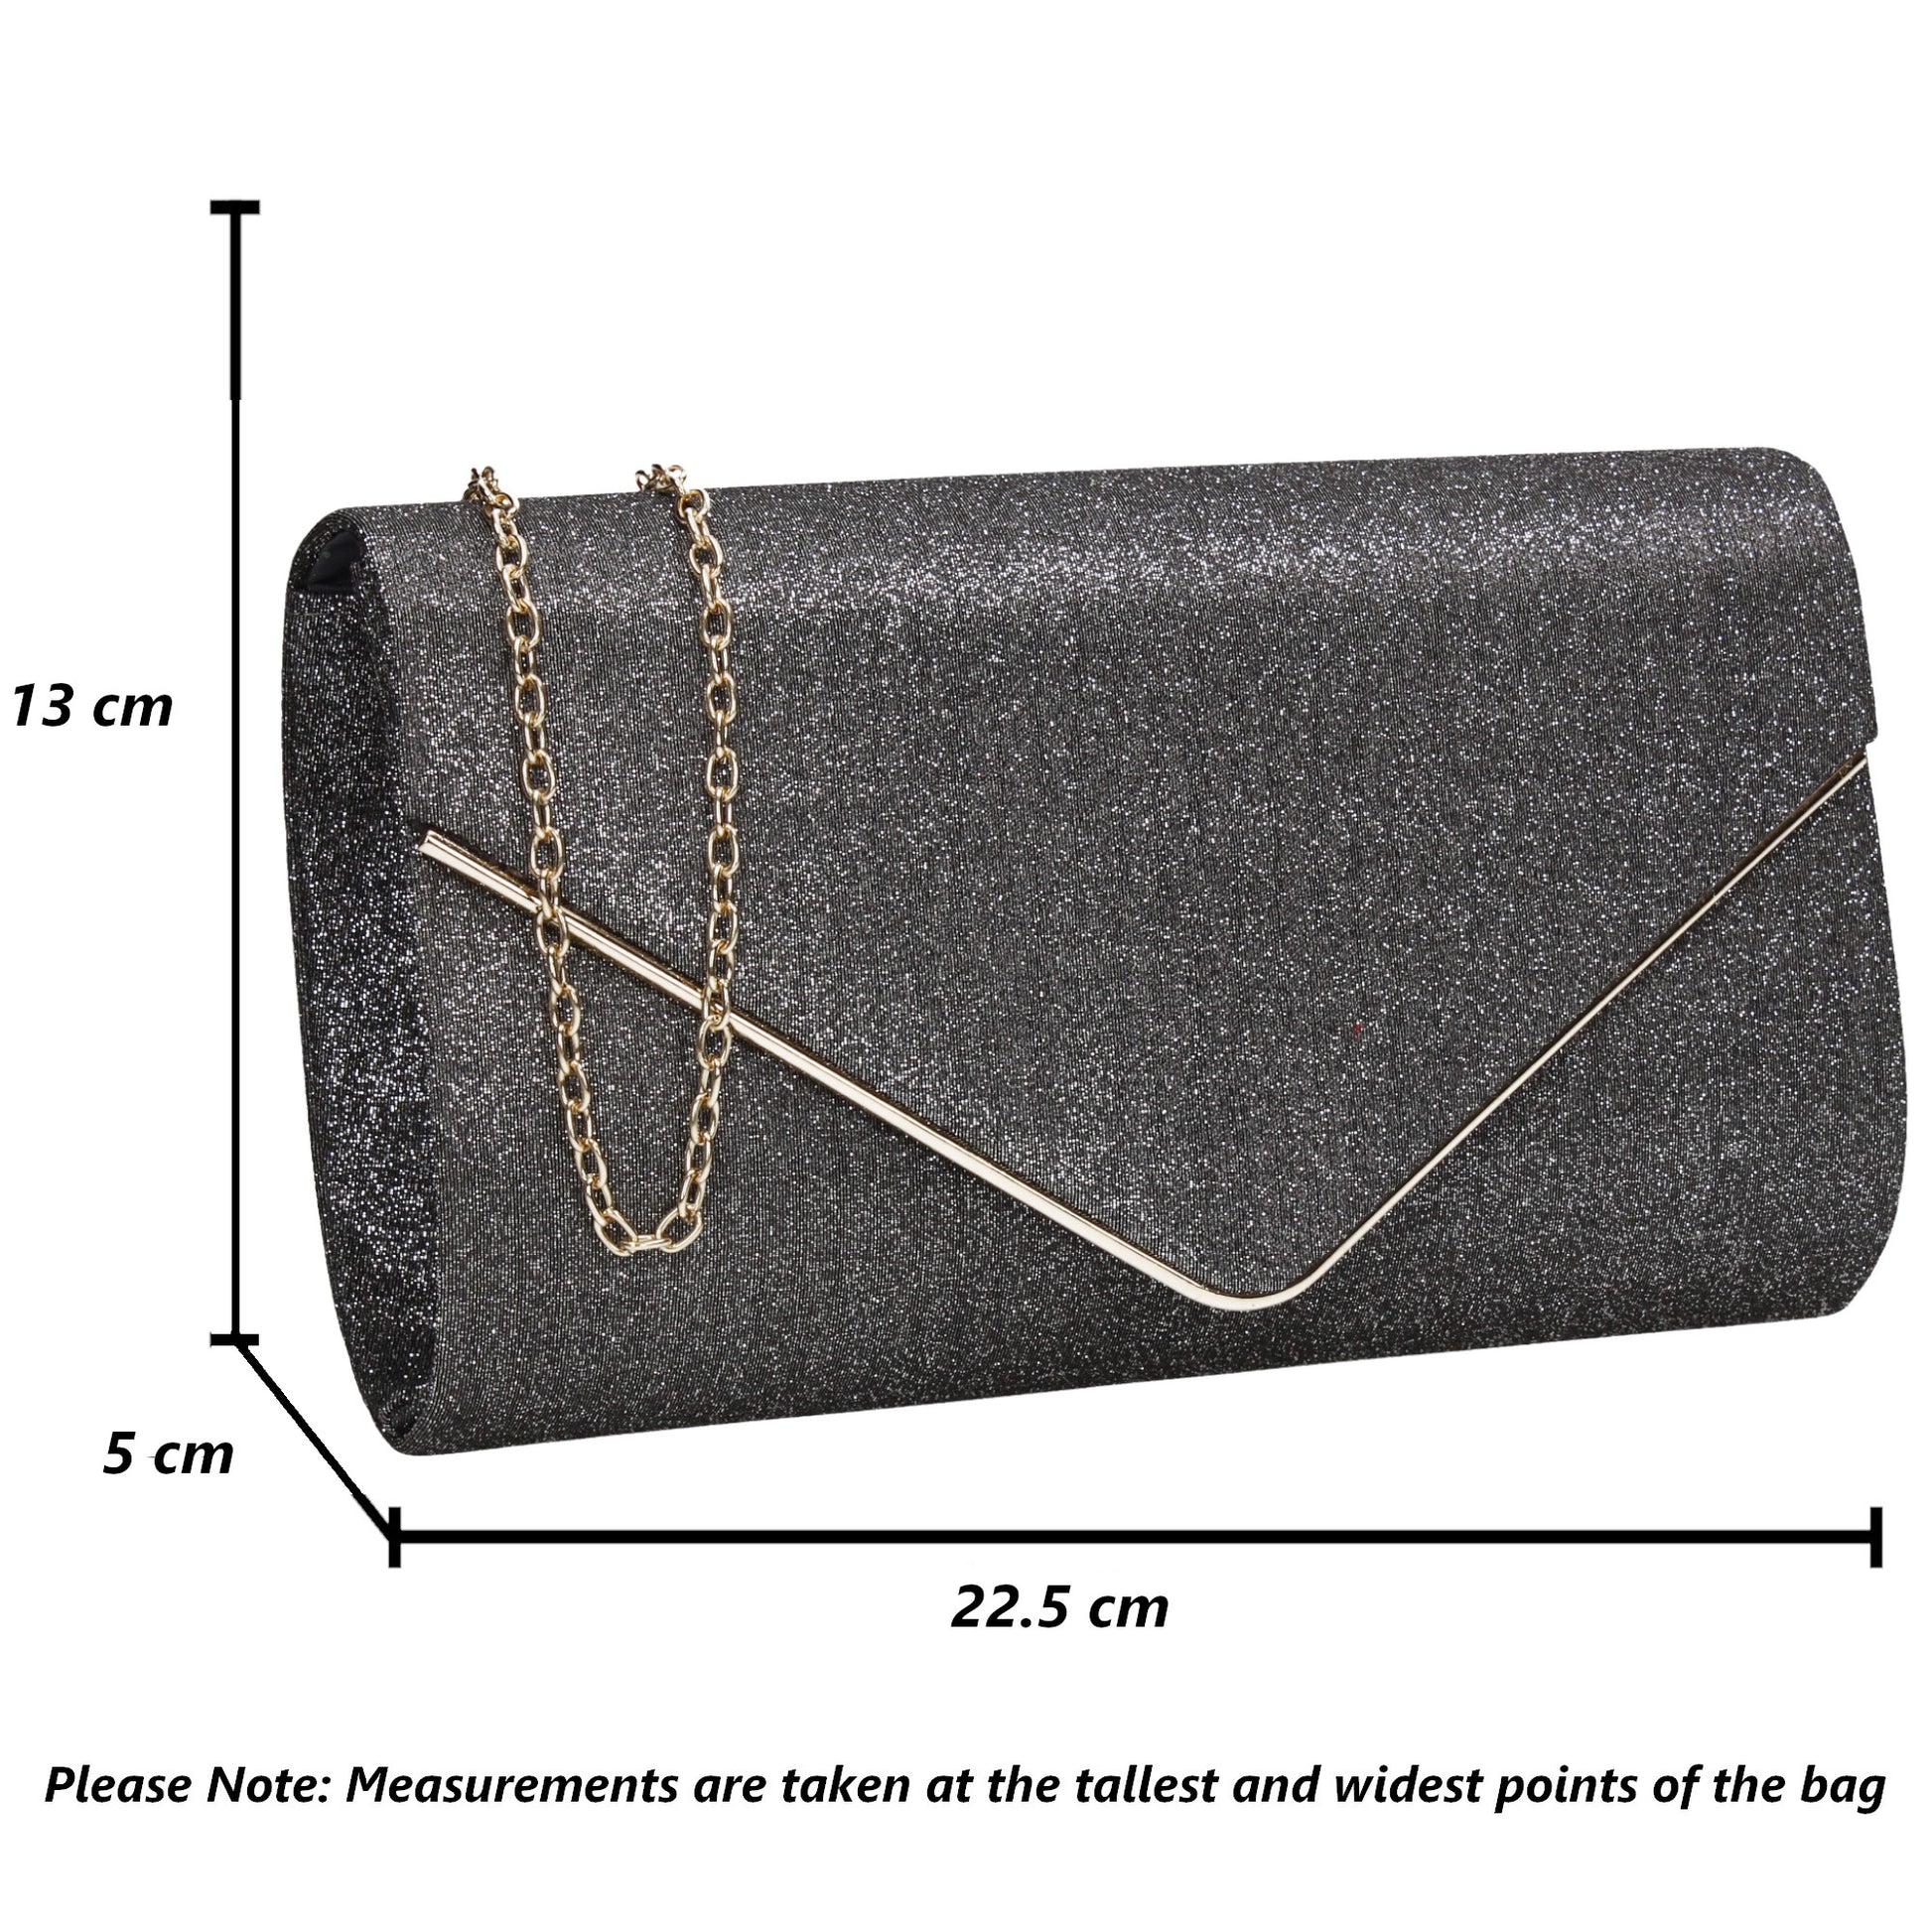 SWANKYSWANS Maya Clutch Bag Grey Cute Cheap Clutch Bag For Weddings School and Work